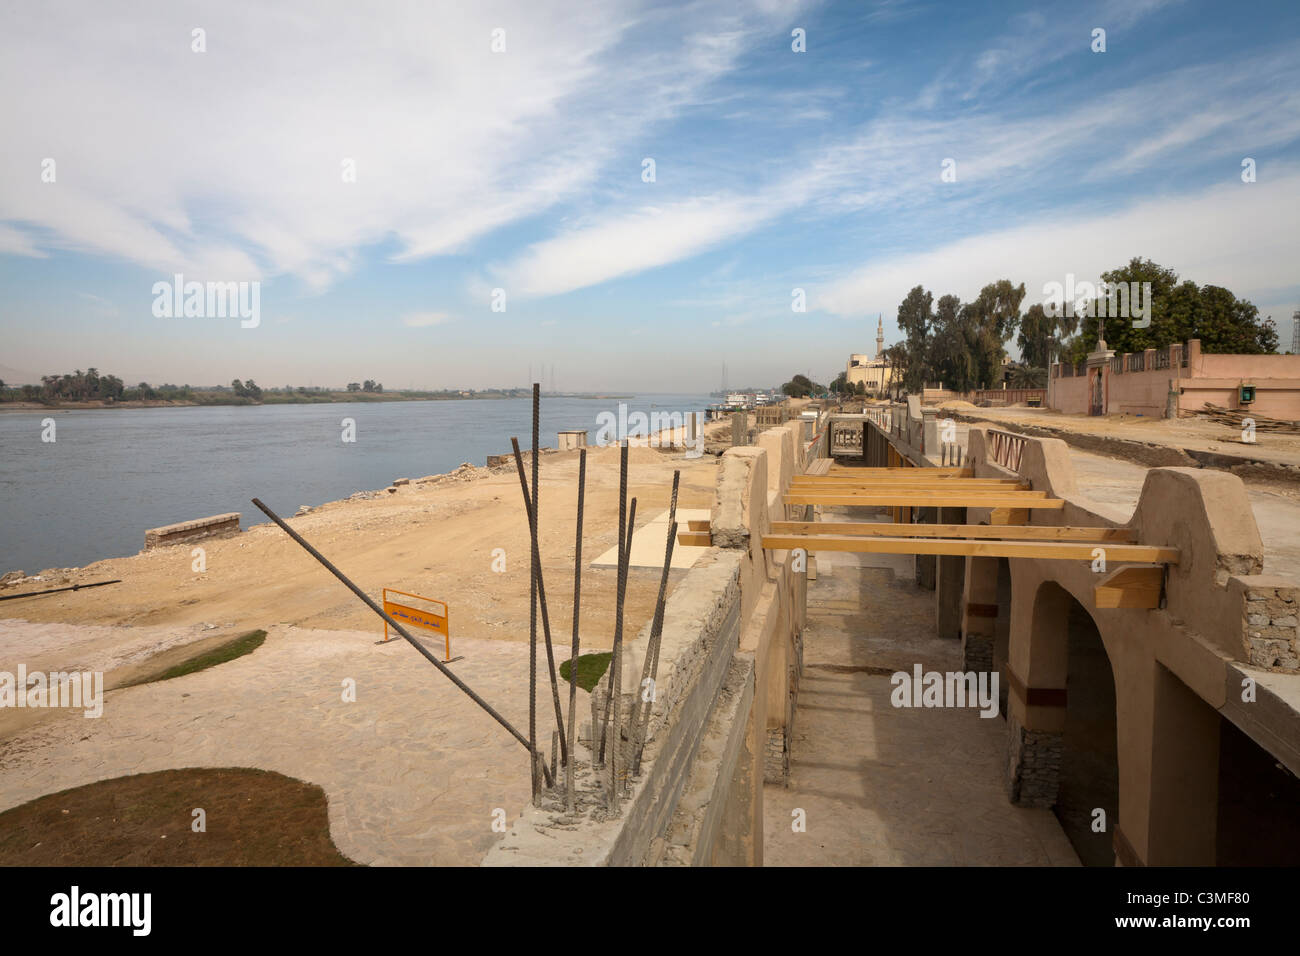 La moderna ciudad de Luxor siendo demolidas para la modernización y la excavación, la Corniche, East Bank, Luxor, Egipto Foto de stock